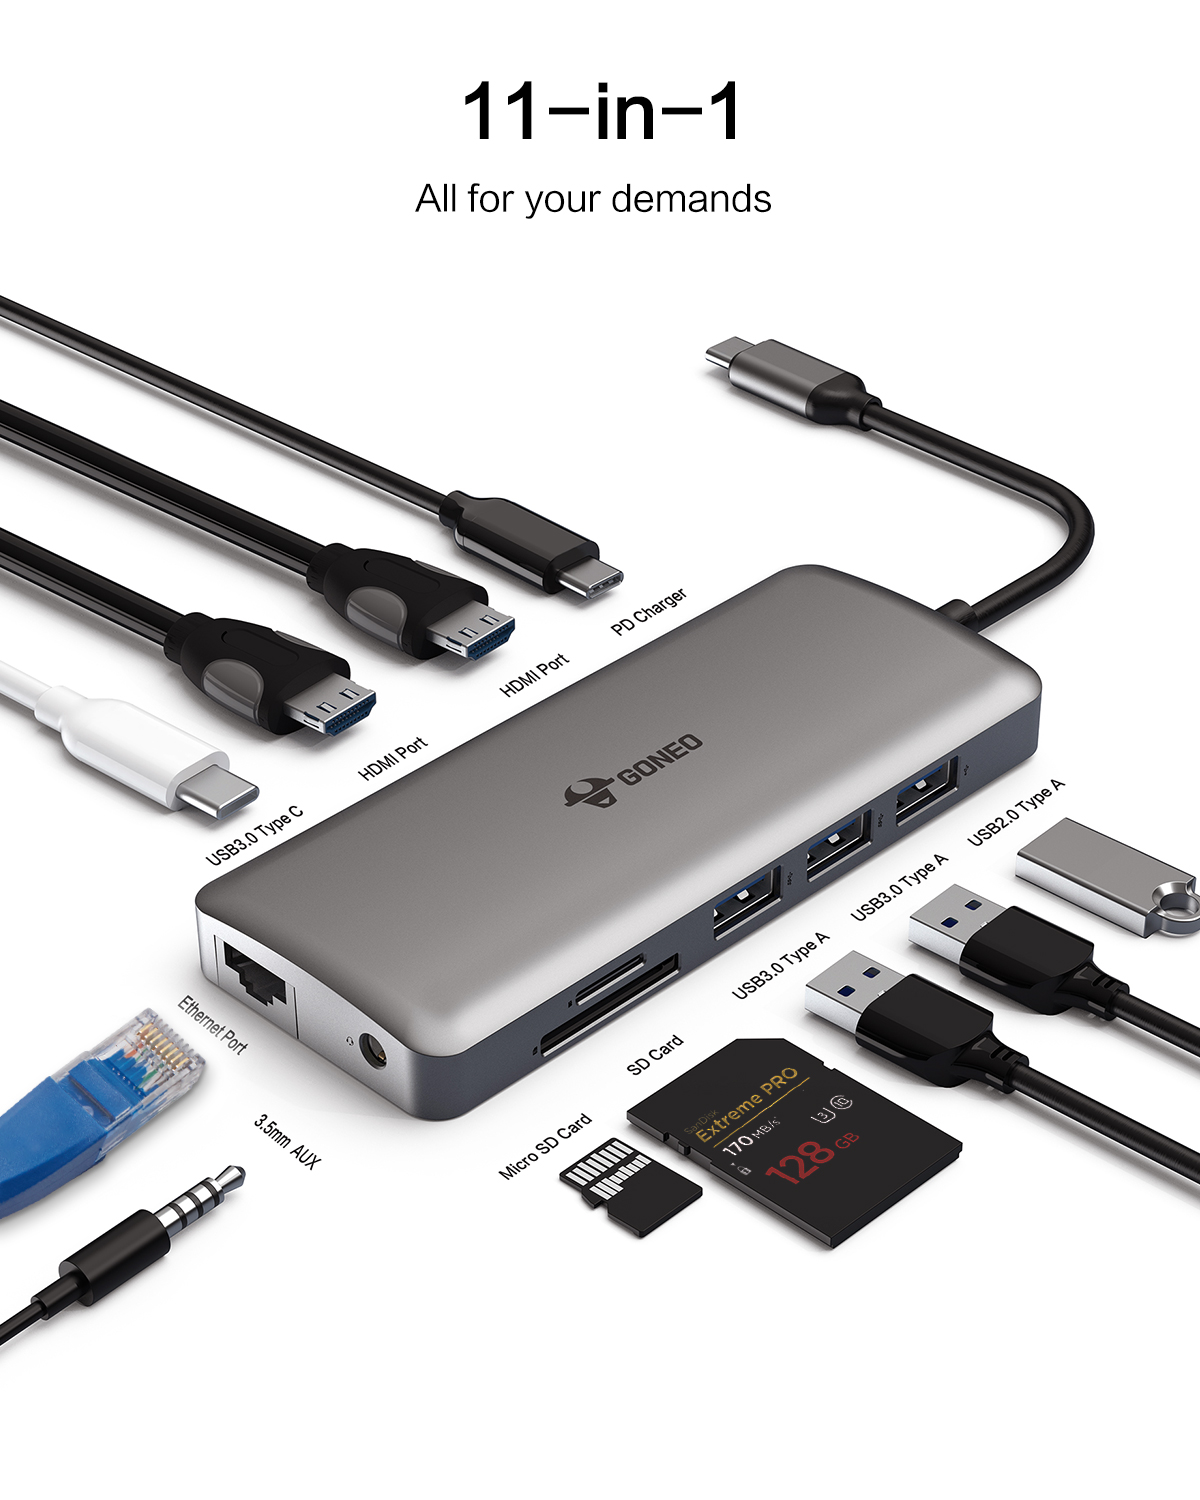 Cáp Chuyển Đổi GONEO USB-C 11 in 1 Hub with 4K HDMI Enternet - Cho Macbook, Surface Pro - Bảo Hành 2 Năm - Chính Hãng